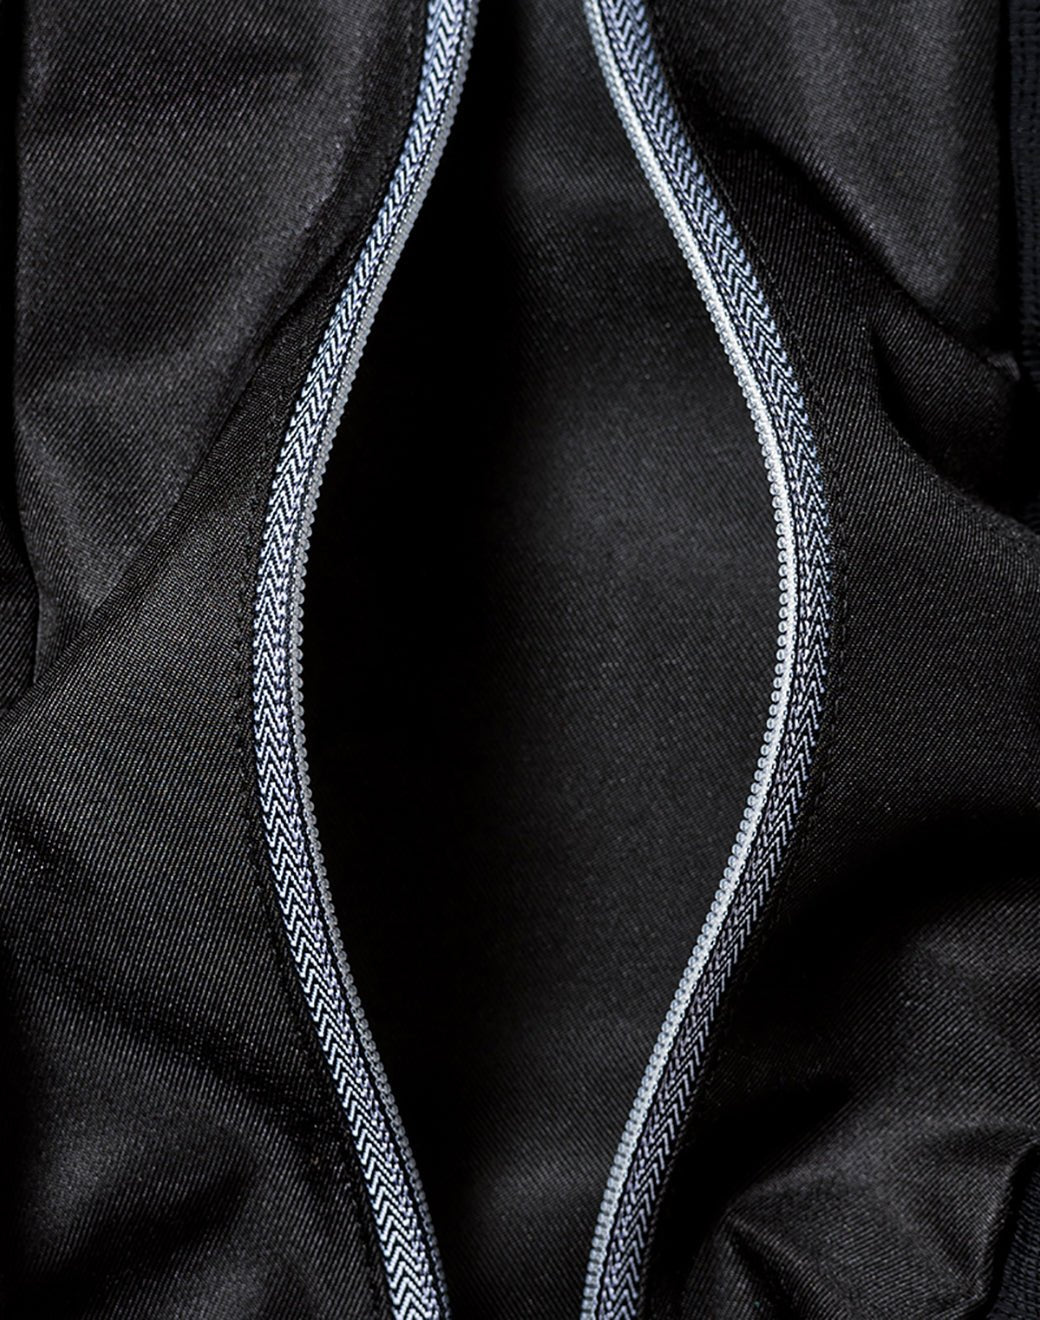 Go Light 3.0 Black Yoga Matı Çantası - Stilefit